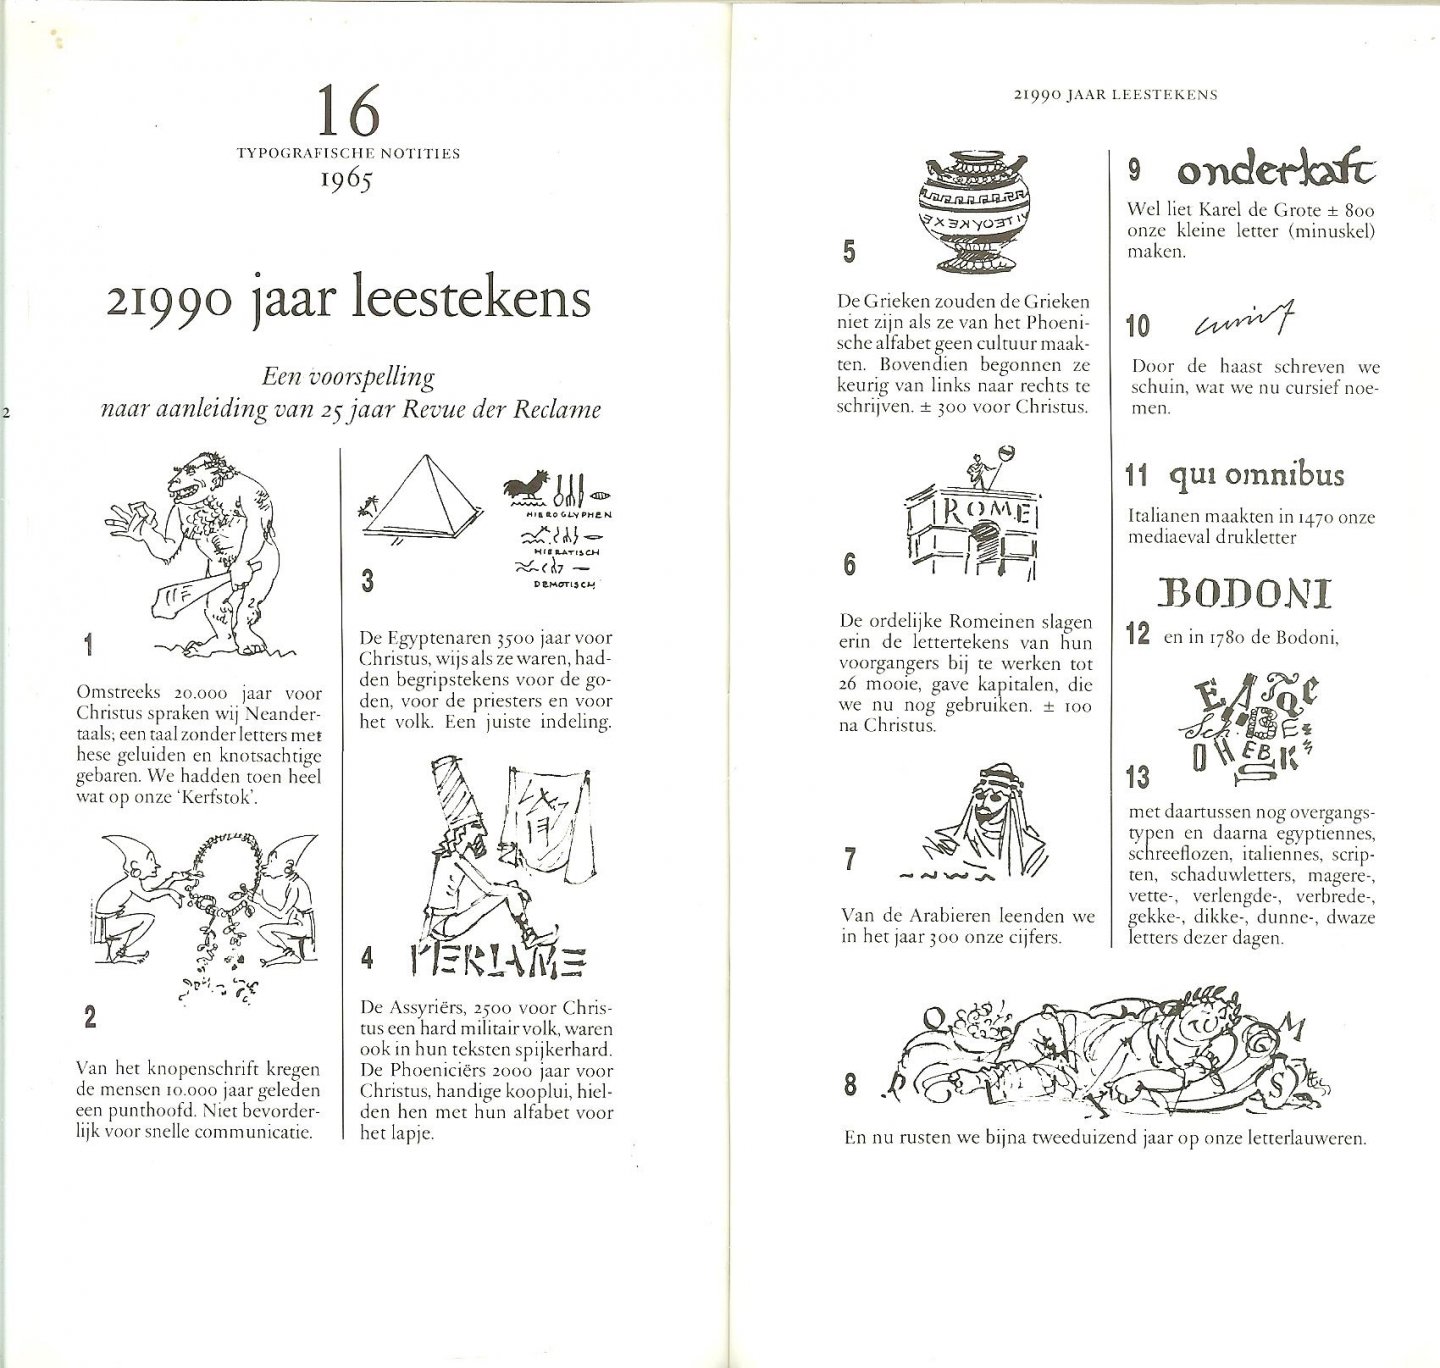 Aldus .. Emile de Vries met voorwoord Joop Roomer - Allemaal Flauwekul  en andere typografische notities .. Een greep uit 25 jaar korte stukjes die nog steeds actueel zijn over letters, vormgeving en reclame.